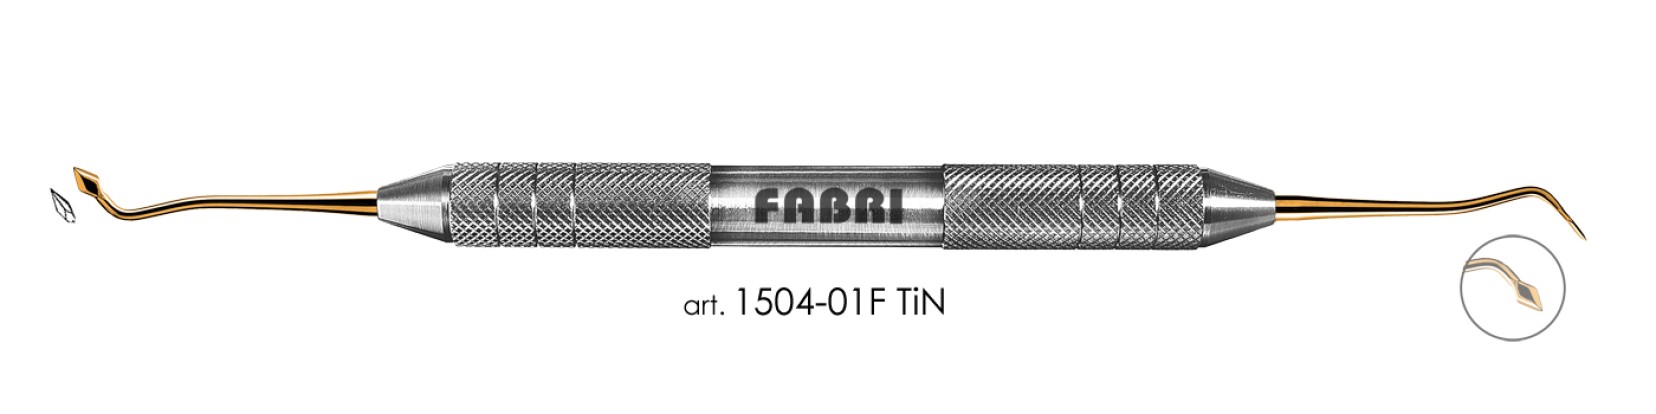 ФАБРИ Fabri  - Инструмент для моделирования (арт. 1504-01 F TIN)